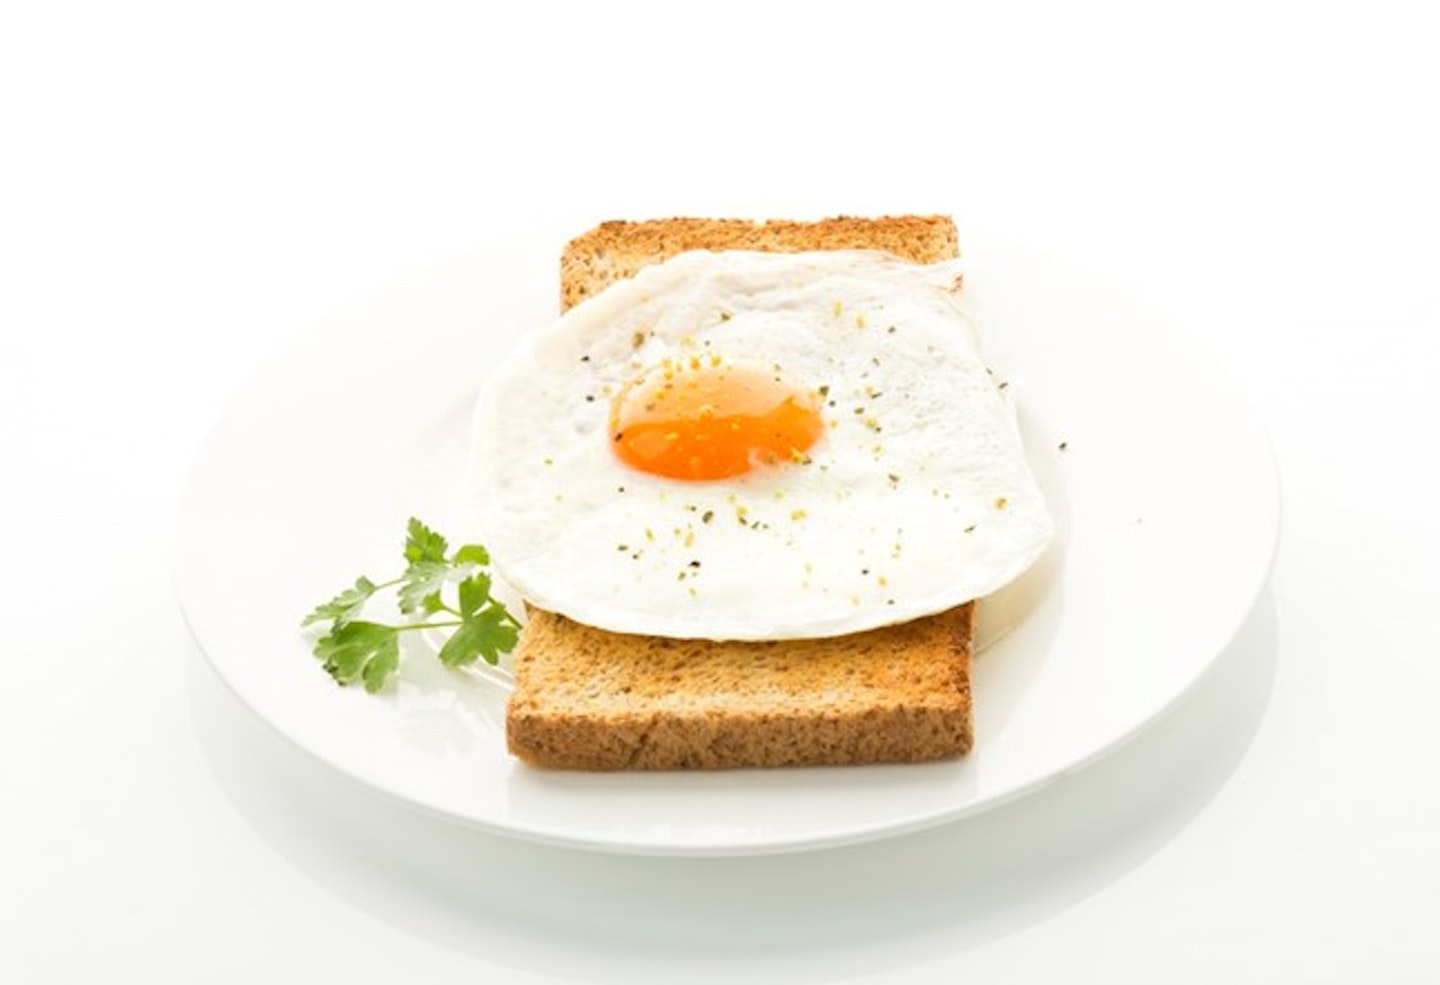 Egg on toast